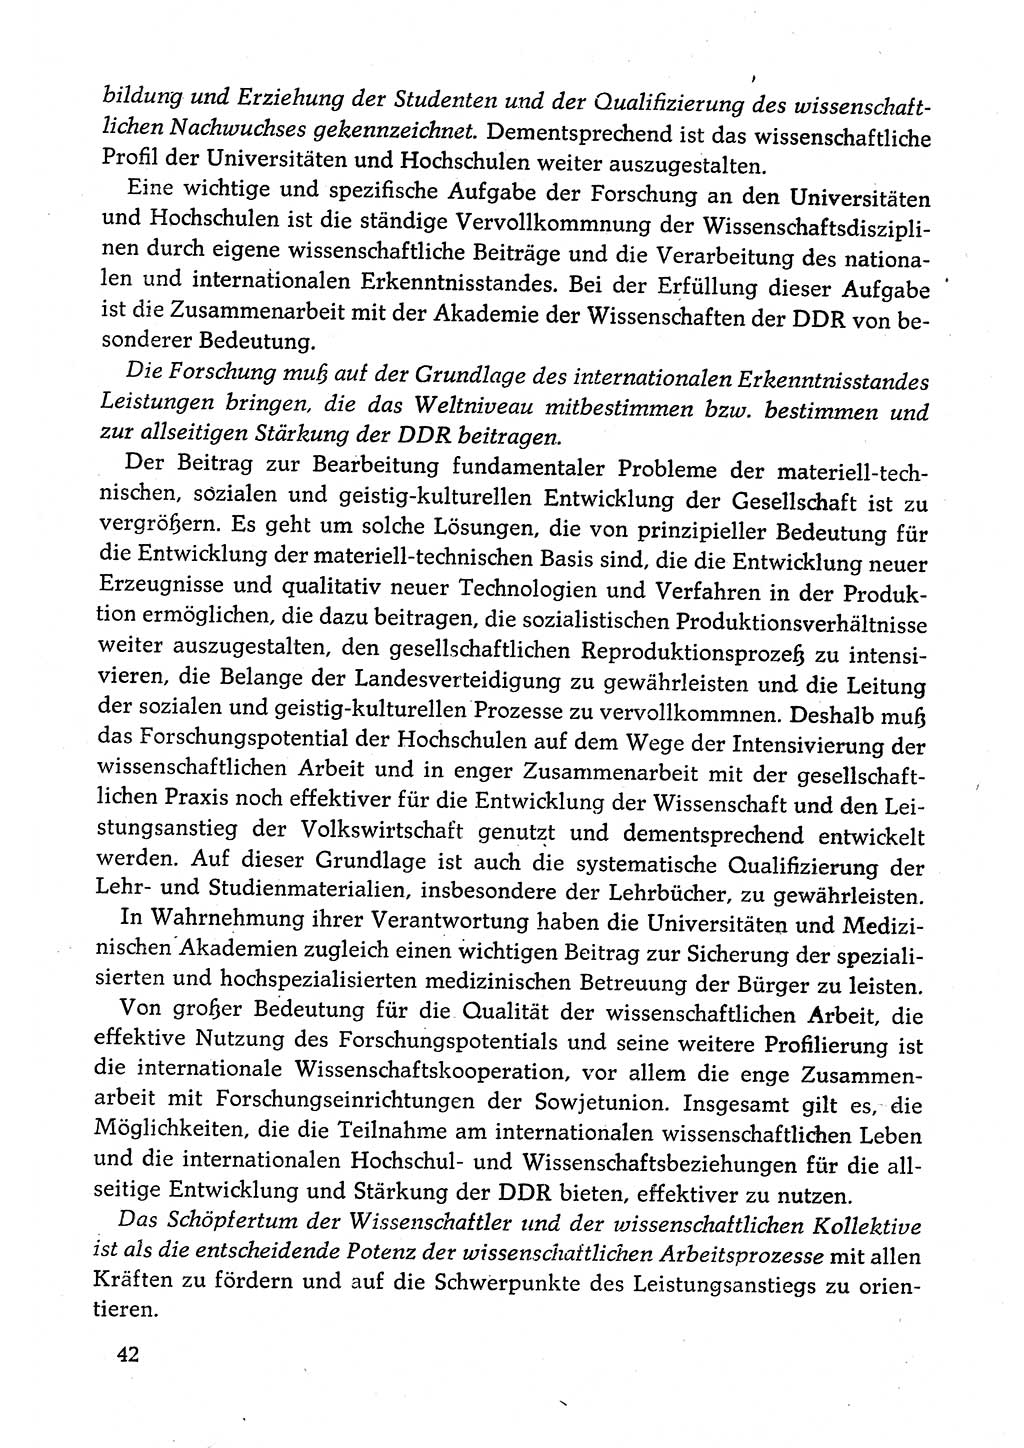 Dokumente der Sozialistischen Einheitspartei Deutschlands (SED) [Deutsche Demokratische Republik (DDR)] 1980-1981, Seite 42 (Dok. SED DDR 1980-1981, S. 42)